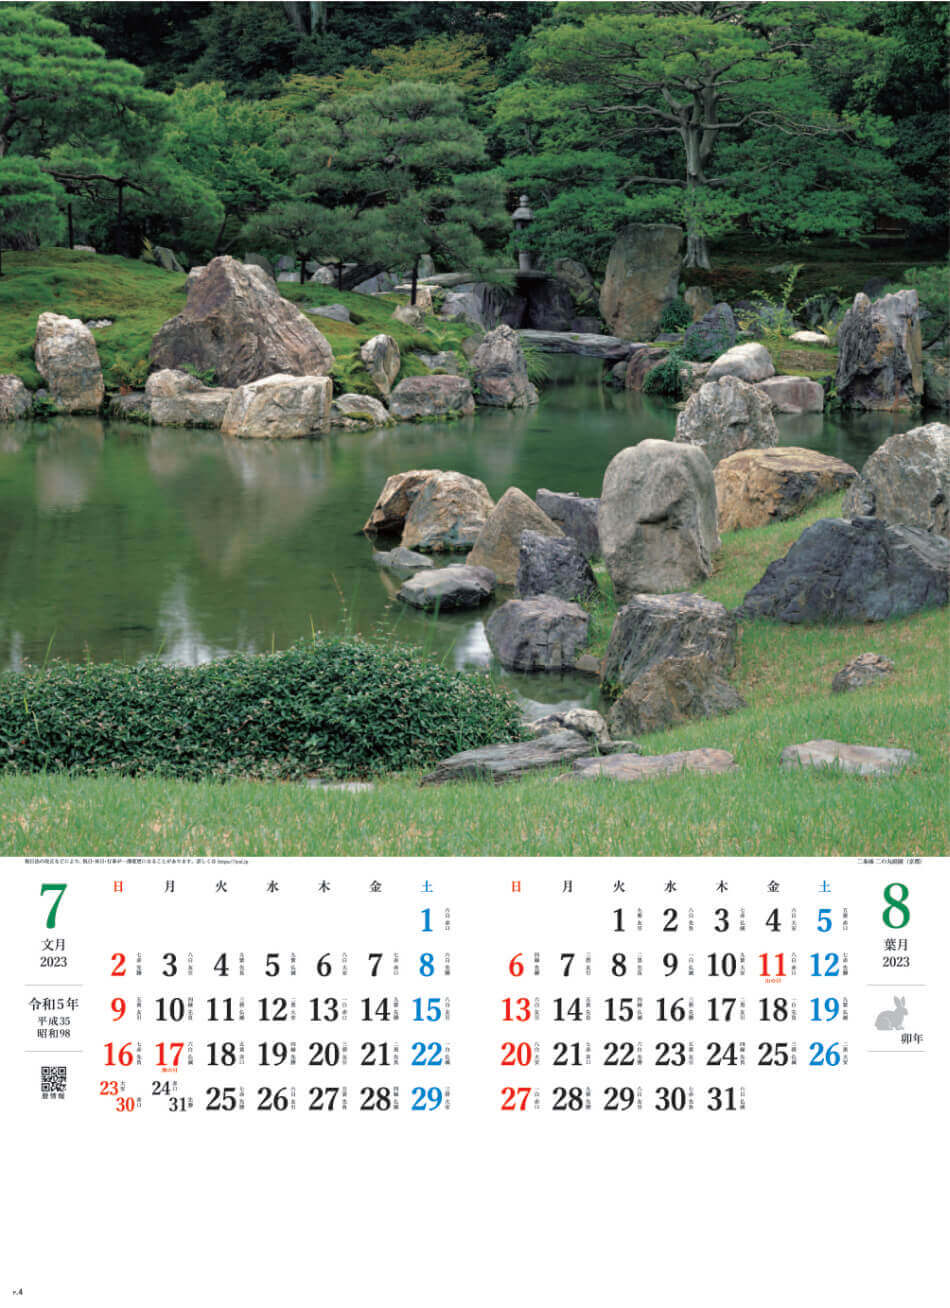 7/8月 二条城二の丸庭園(京都) 庭の心 2023年カレンダーの画像